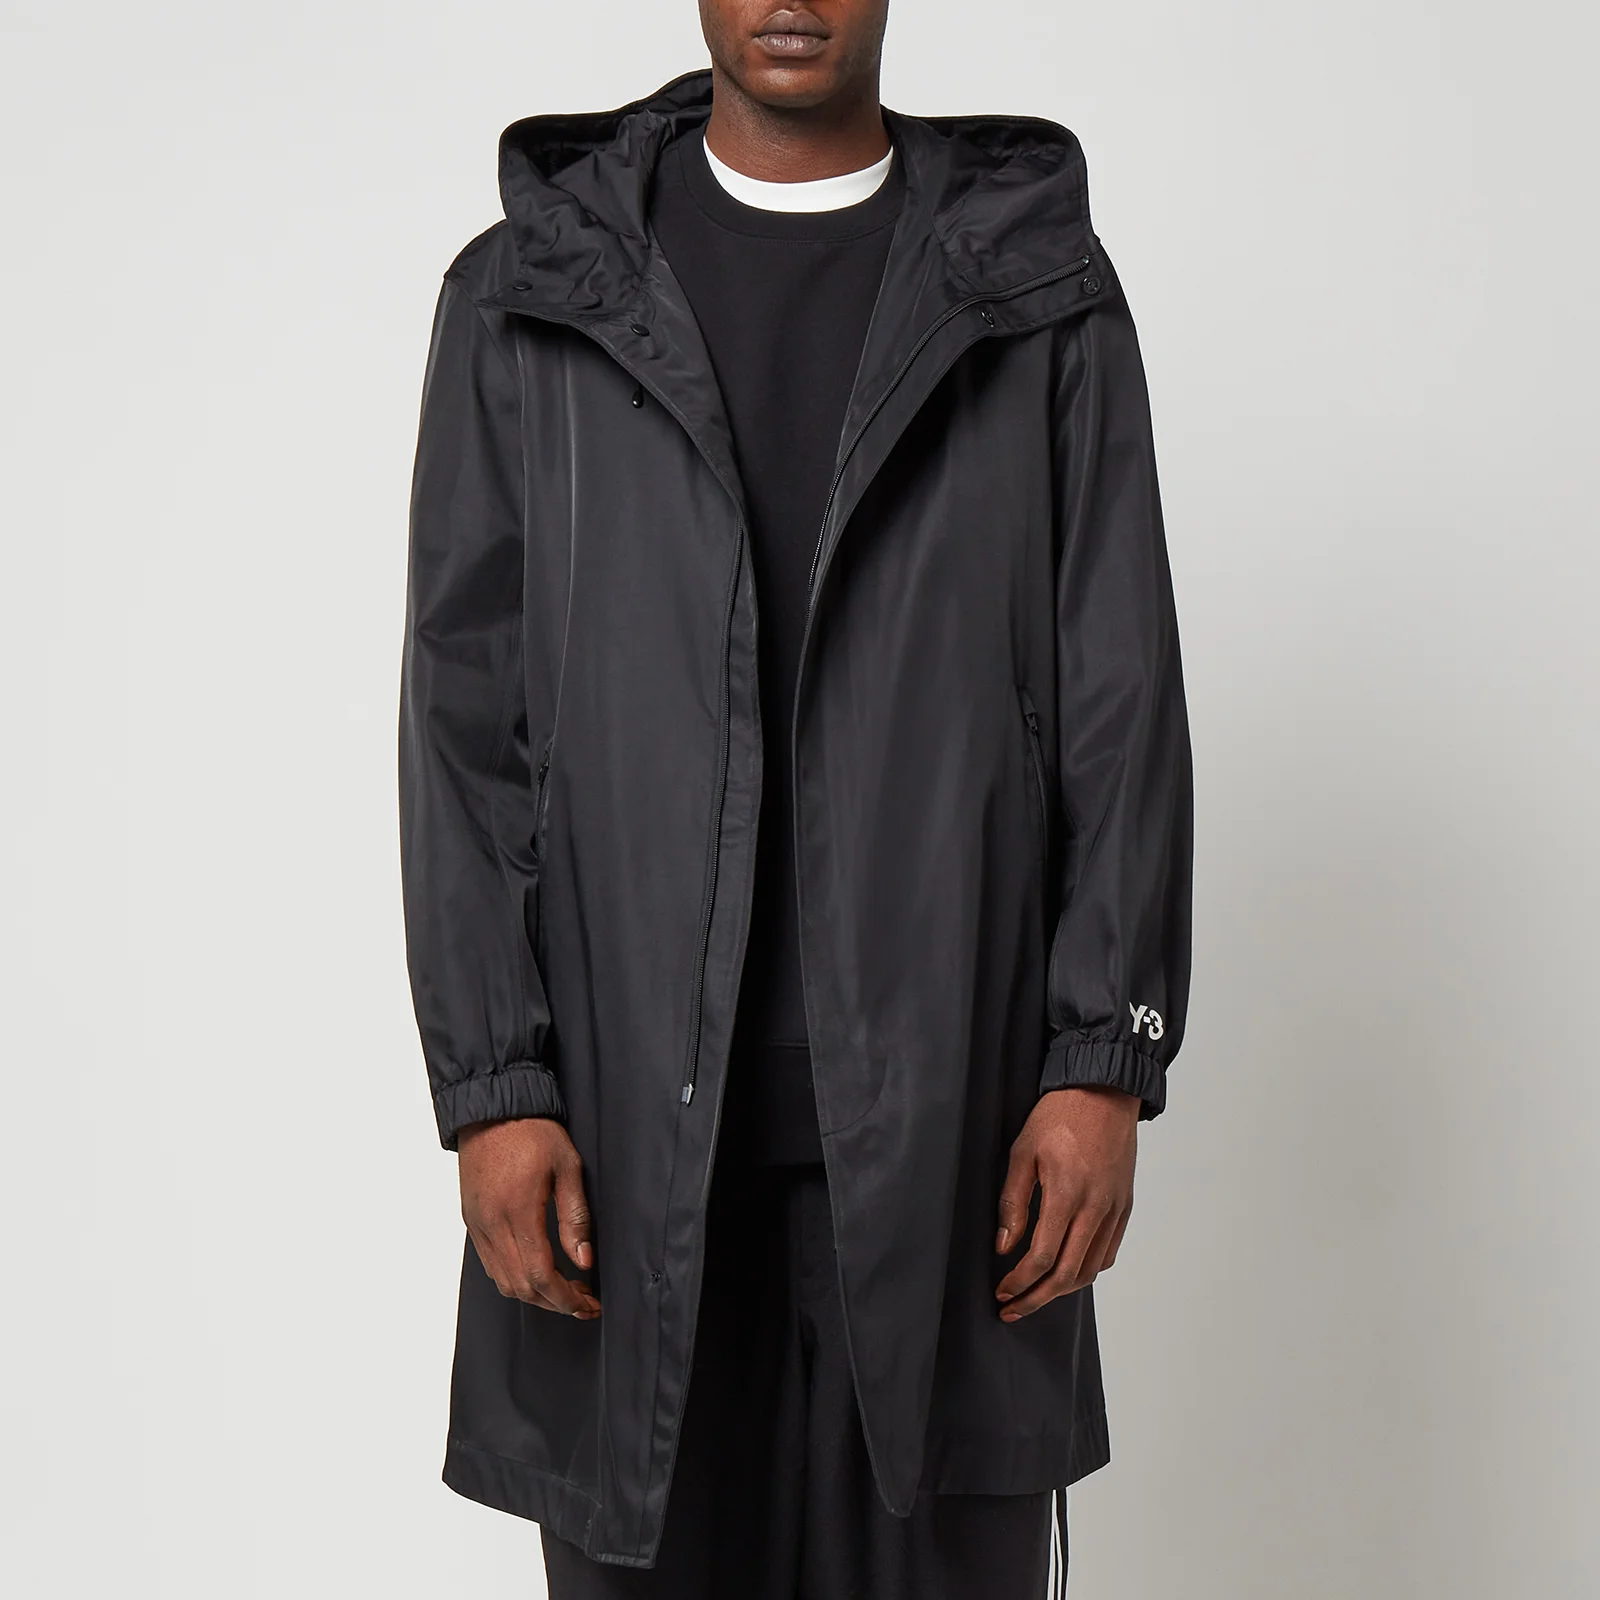 Y-3 Men's Hooded Coat - Black Image 1